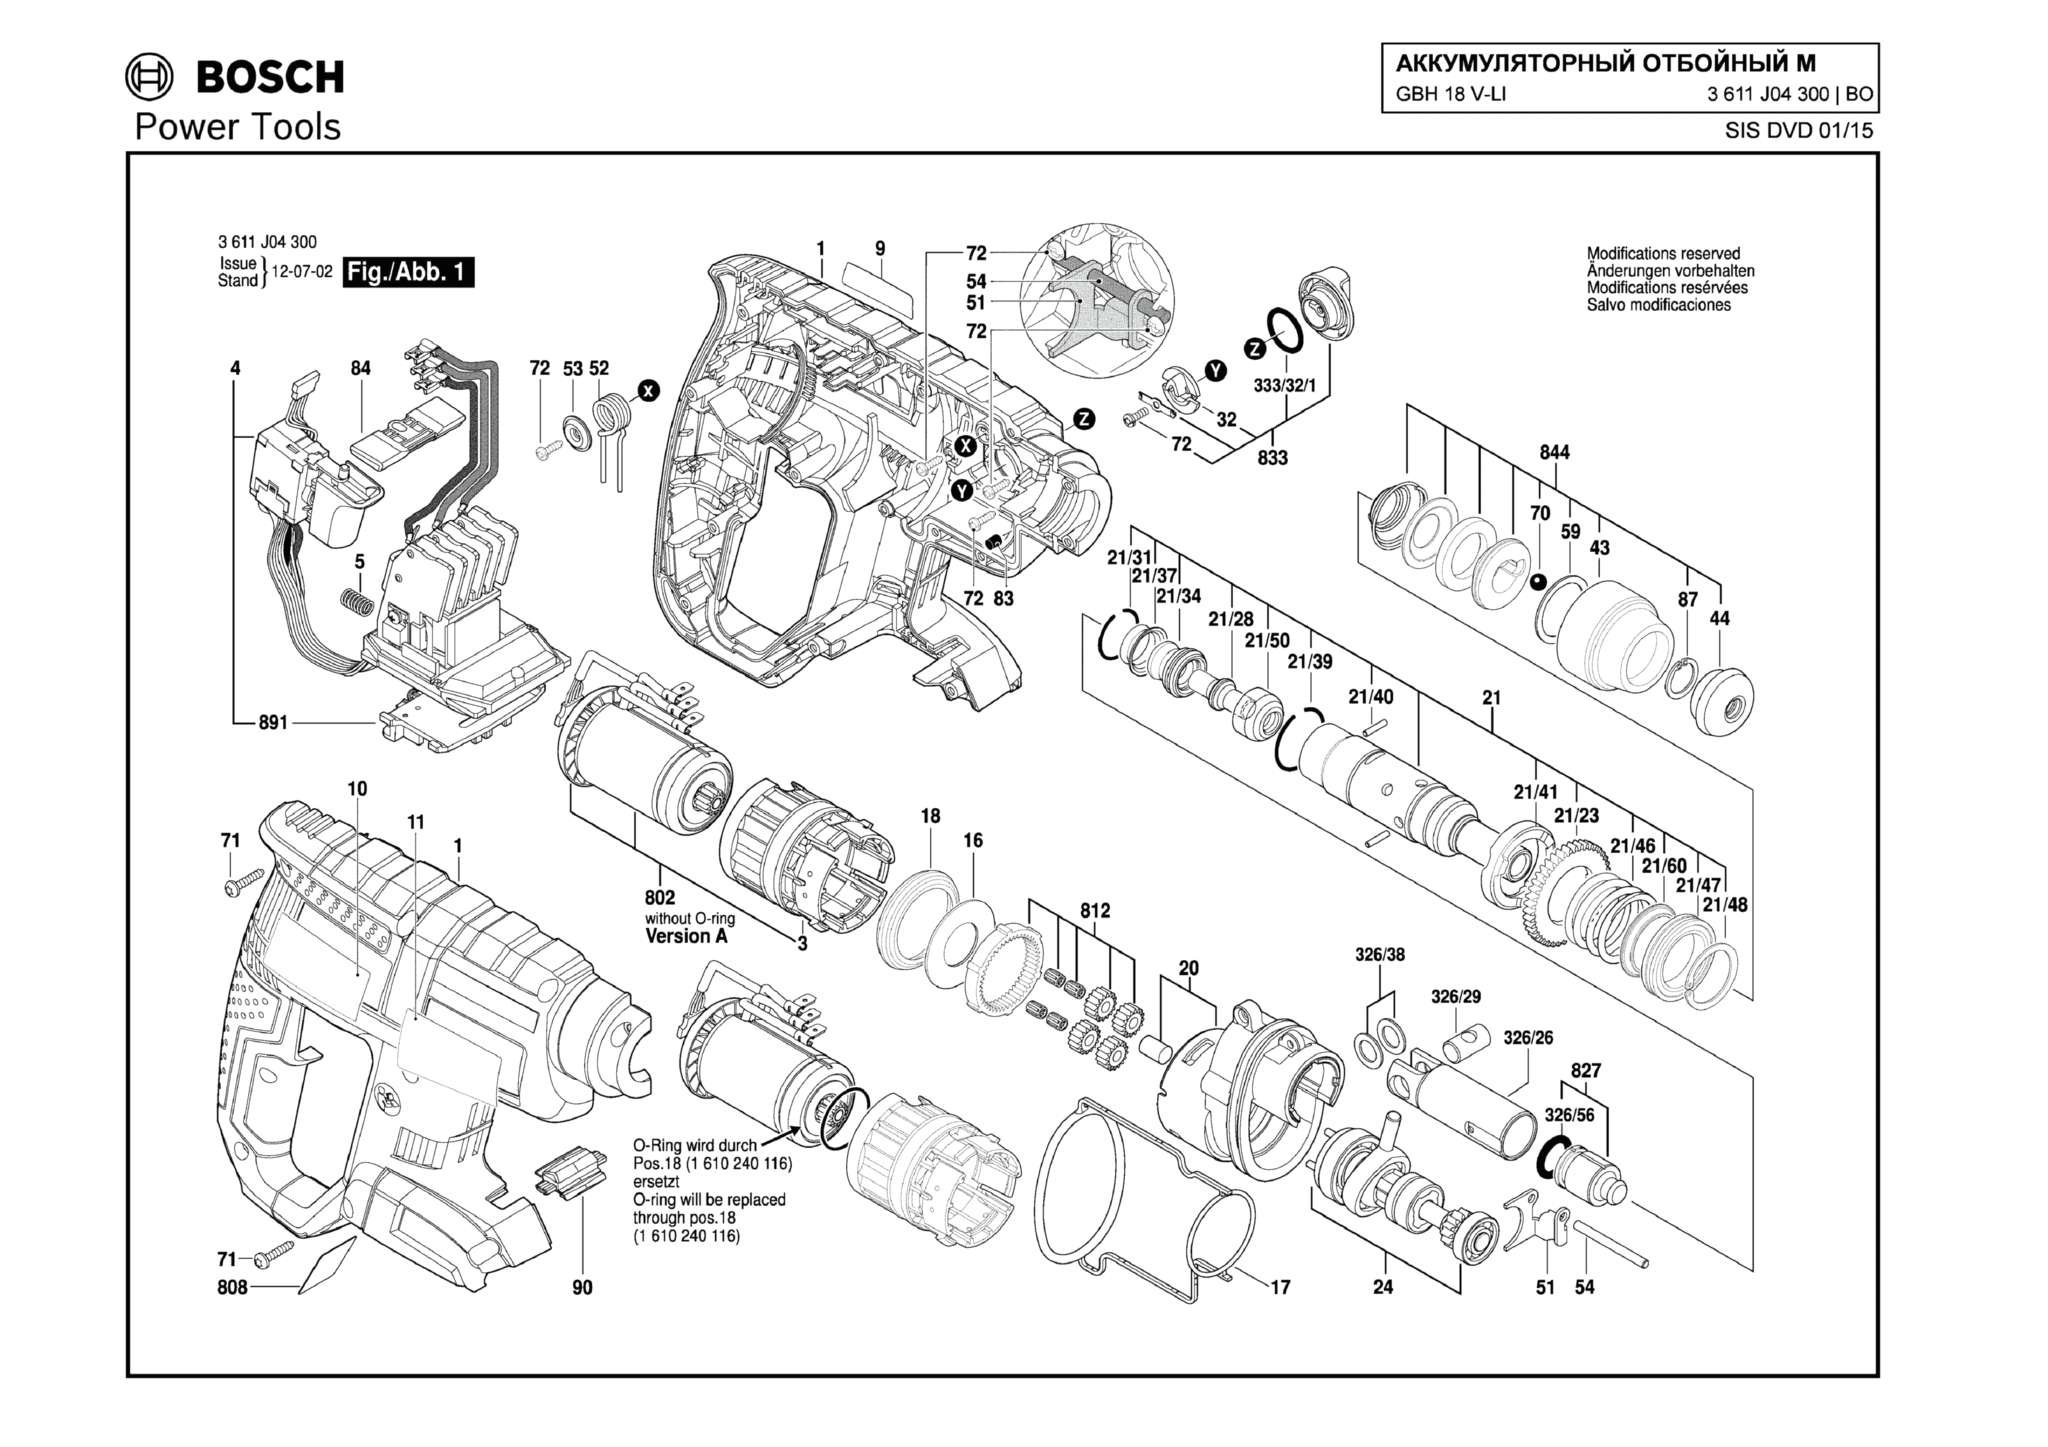 Запчасти, схема и деталировка Bosch GBH 18 V-LI (ТИП 3611J04300) (ЧАСТЬ 1)